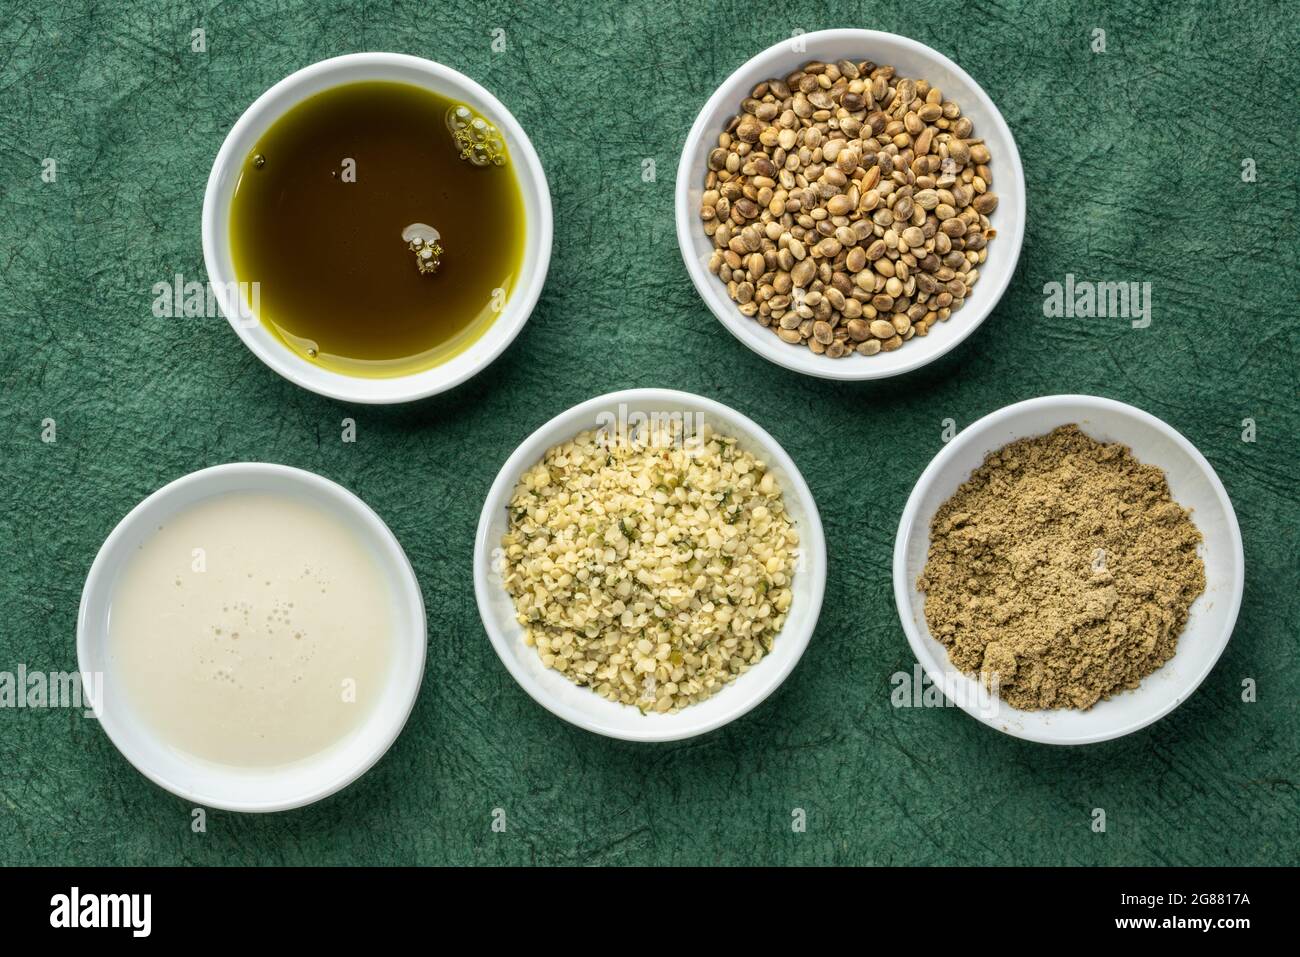 raccolta di prodotti di semi di canapa: cuori, proteine in polvere, latte e olio in piccole ciotole bianche contro carta verde testurizzata, concetto di supercibo Foto Stock